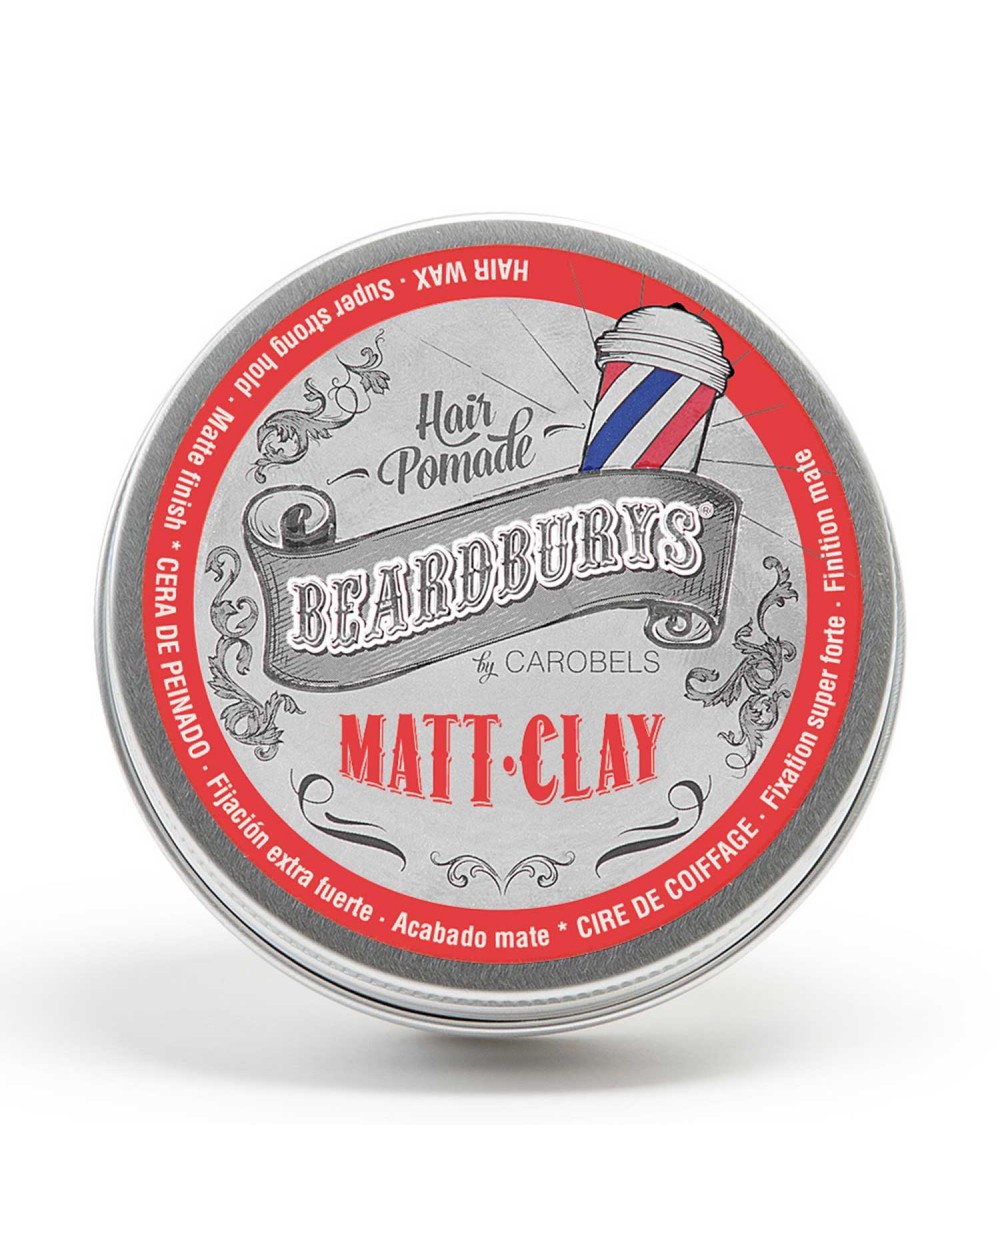 Cera para el pelo Beardburys Matt Clay 100ml